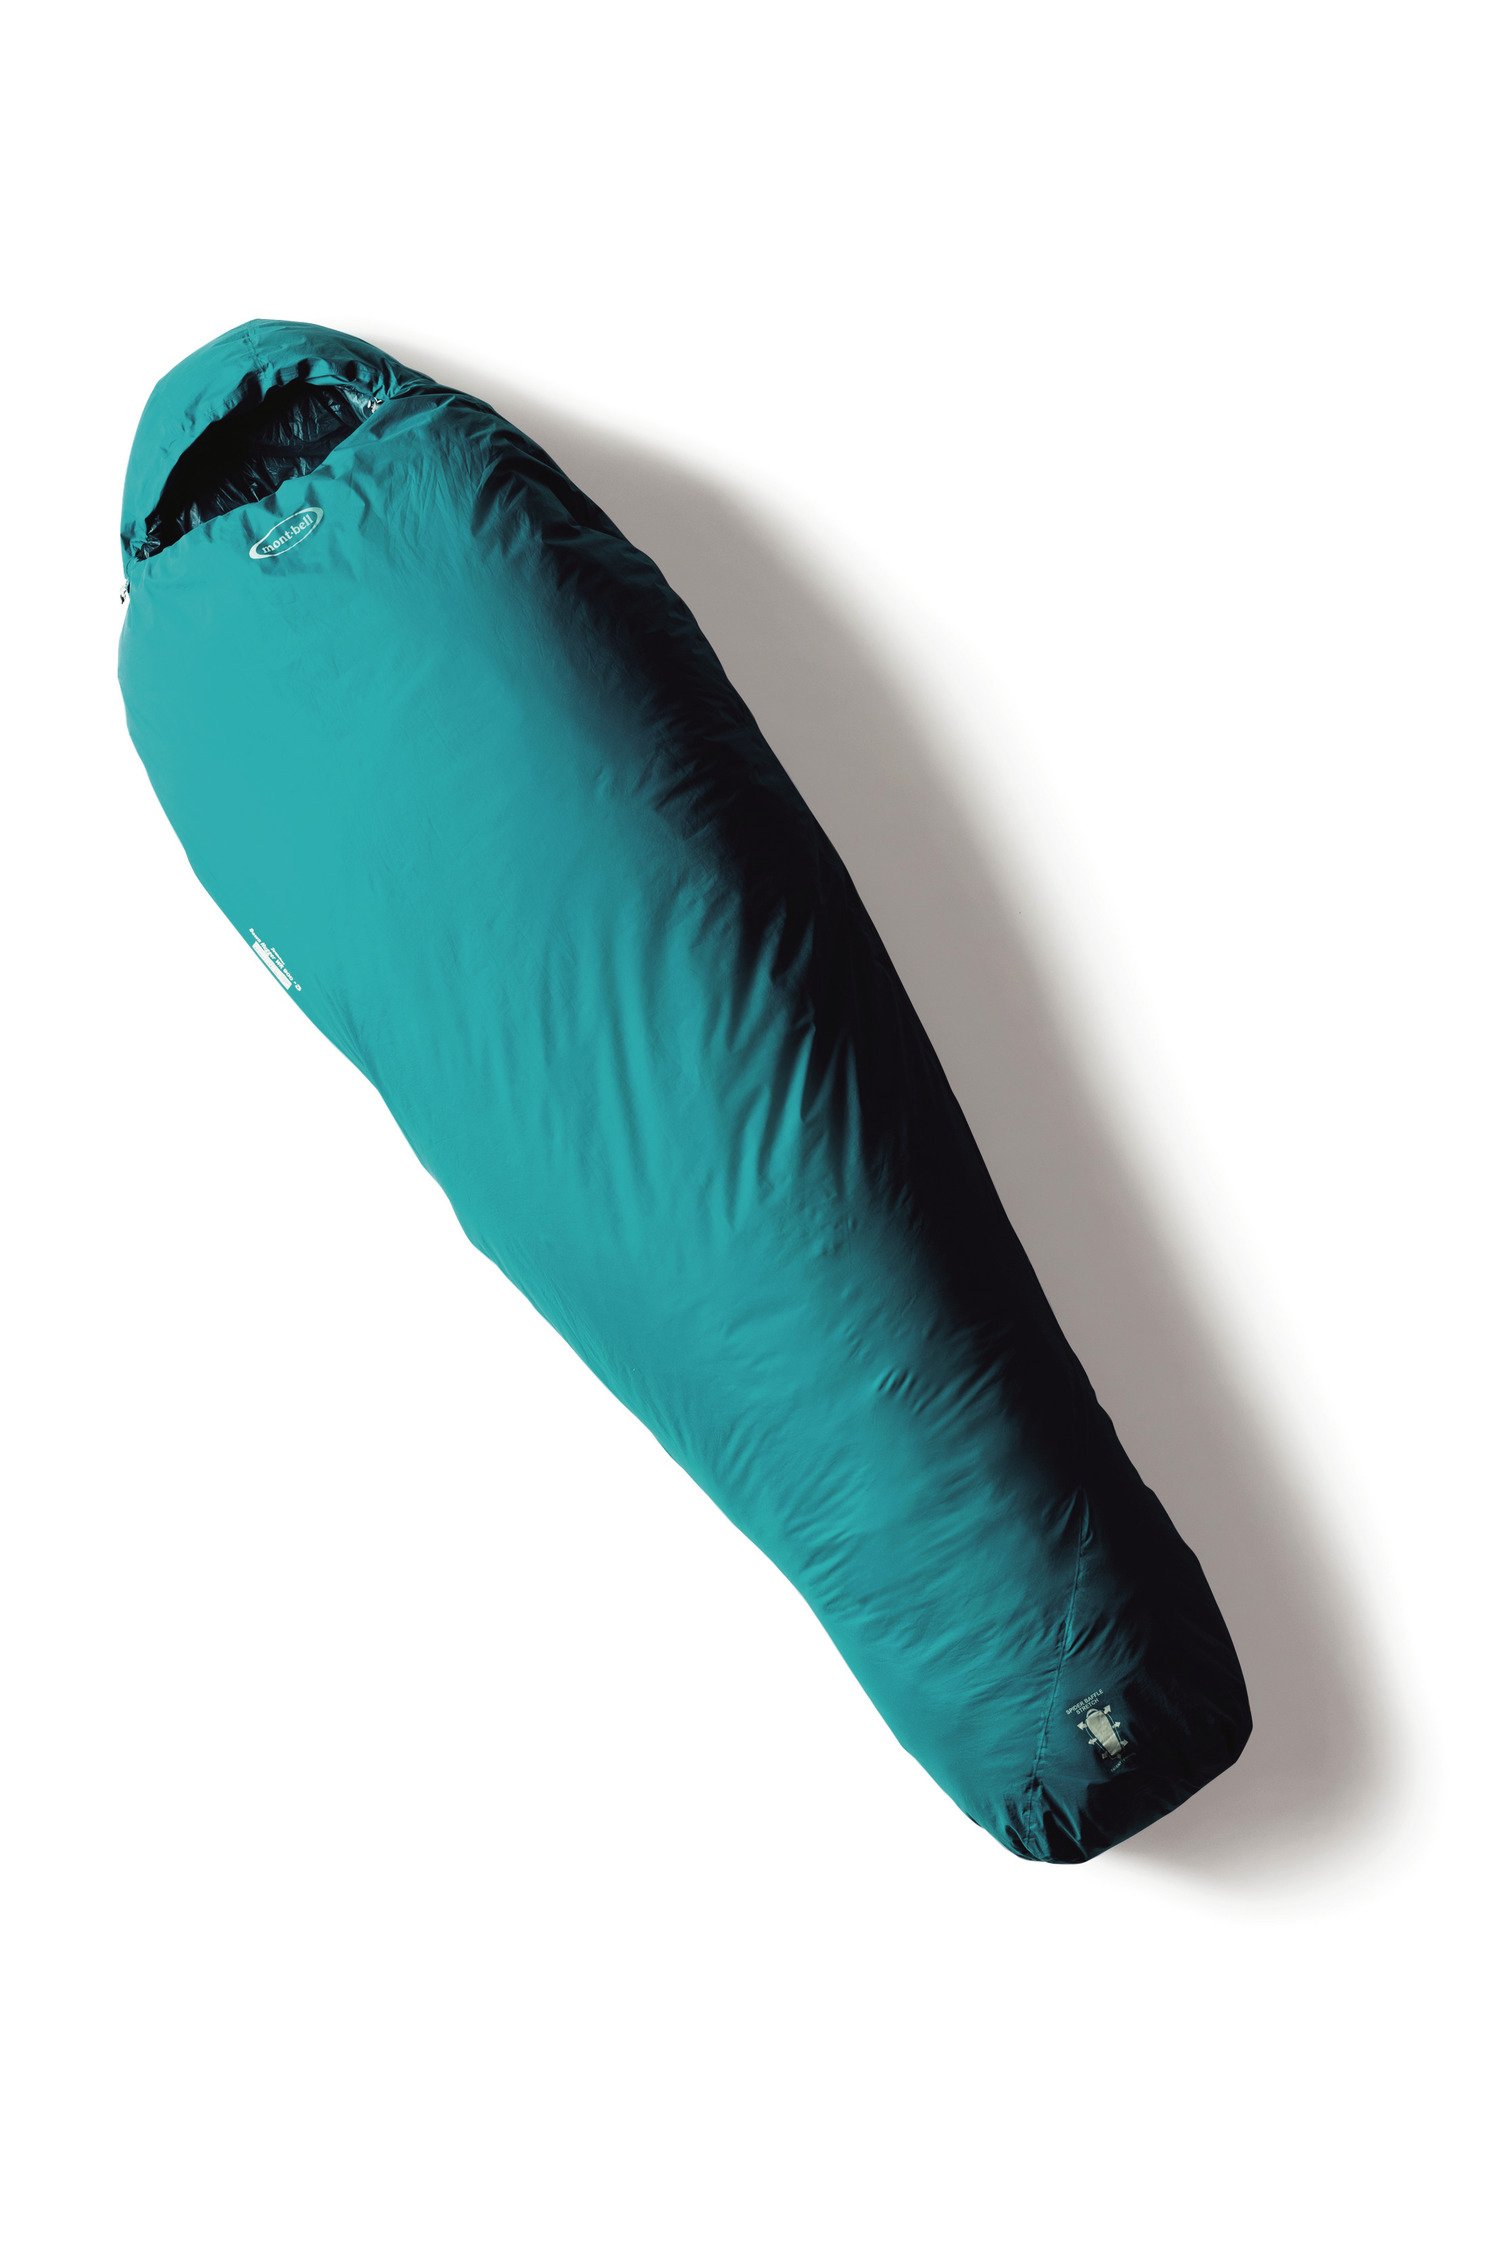 キャンプでも快適に寝たい人必見 最新の寝袋２モデルを紹介 寝袋 枕 Be Pal キャンプ アウトドア 自然派生活の情報源ビーパル